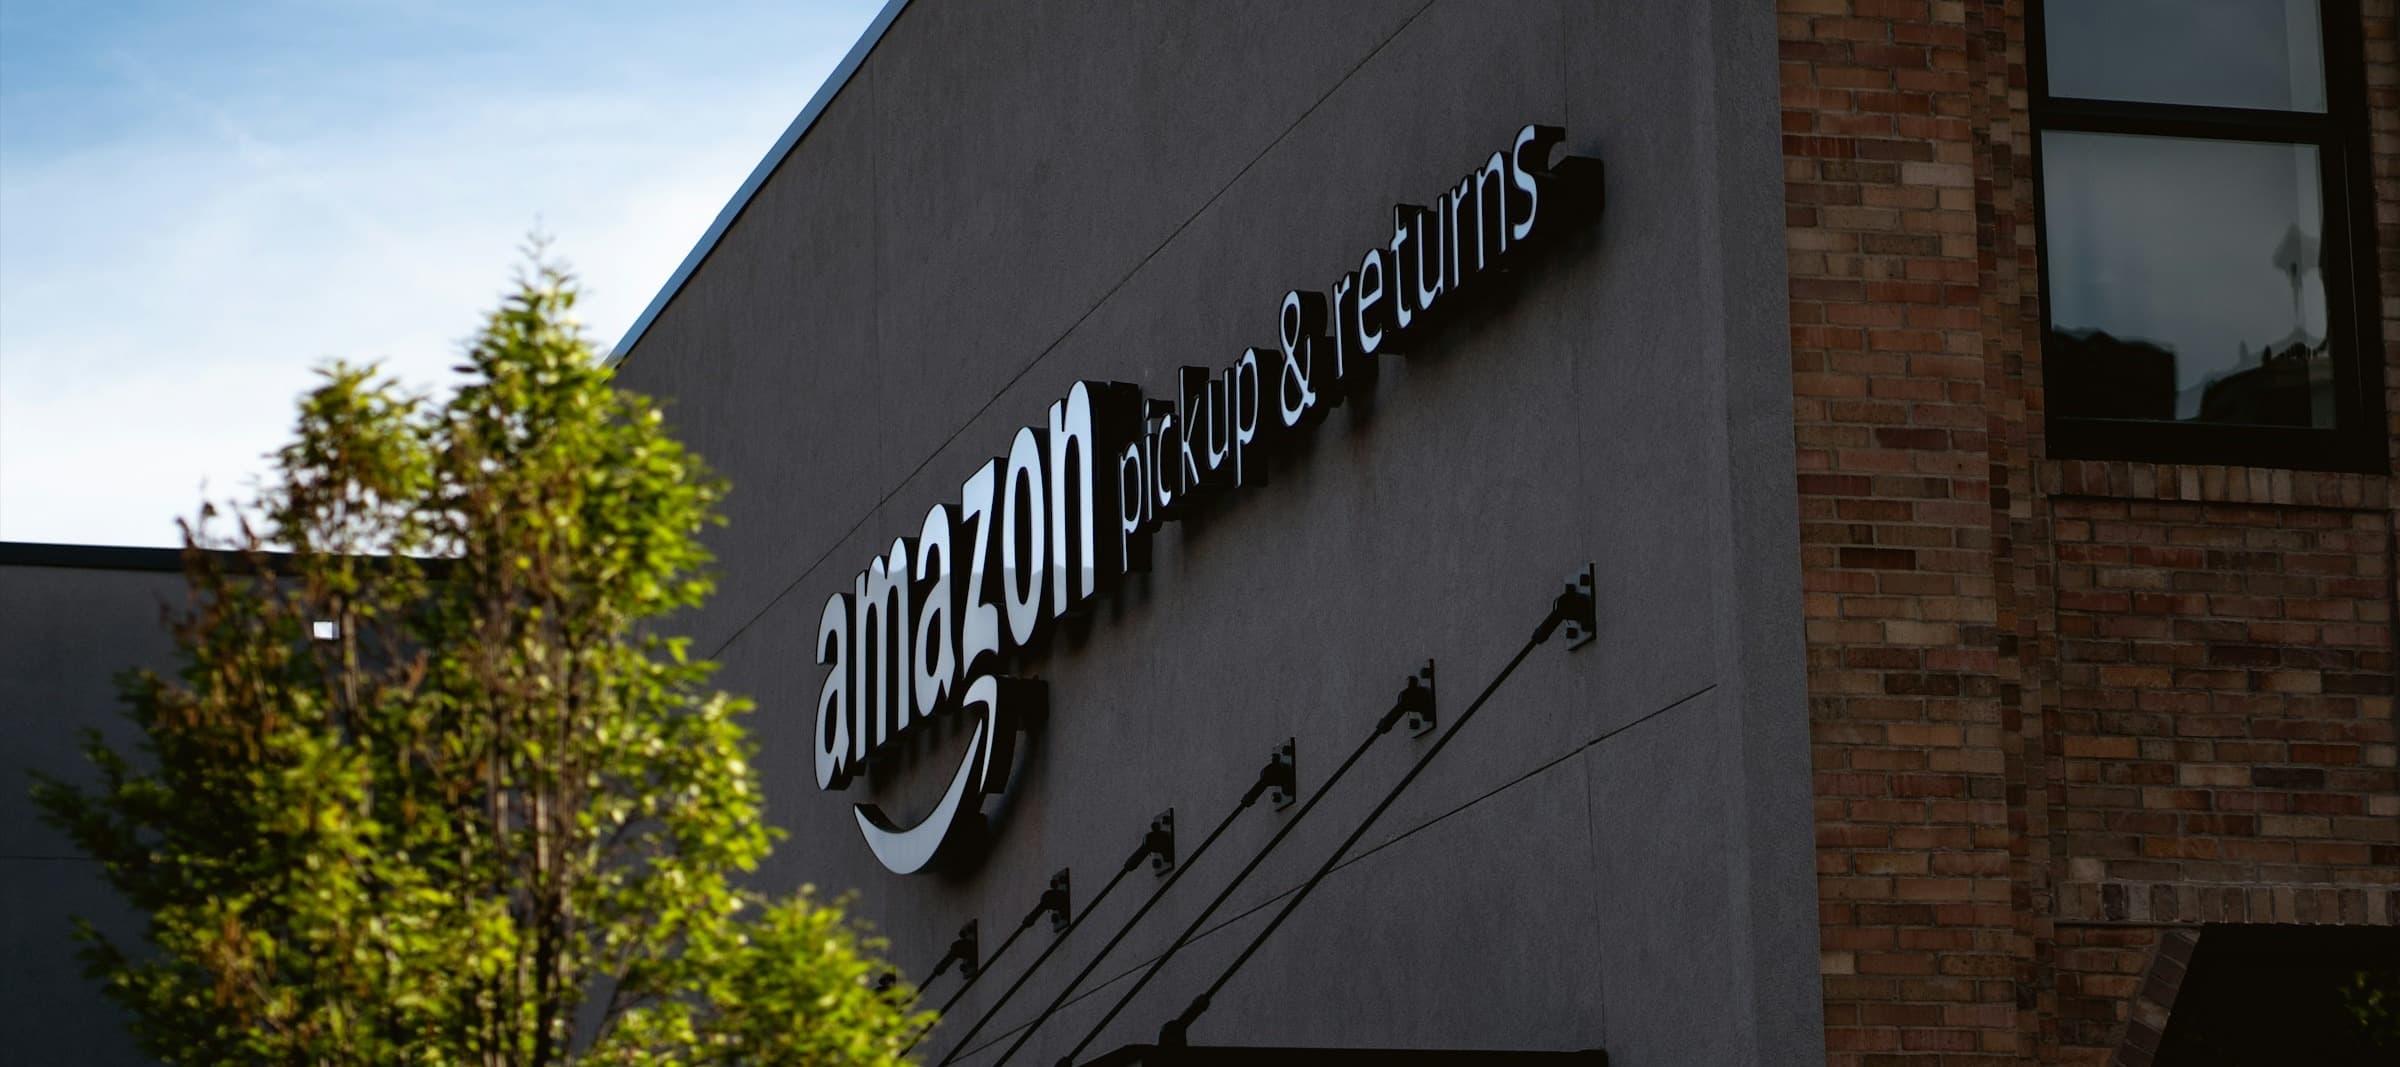 Фото новости: "WSJ: Amazon тайно отправляла сотрудников в компании-конкуренты для сбора информации"